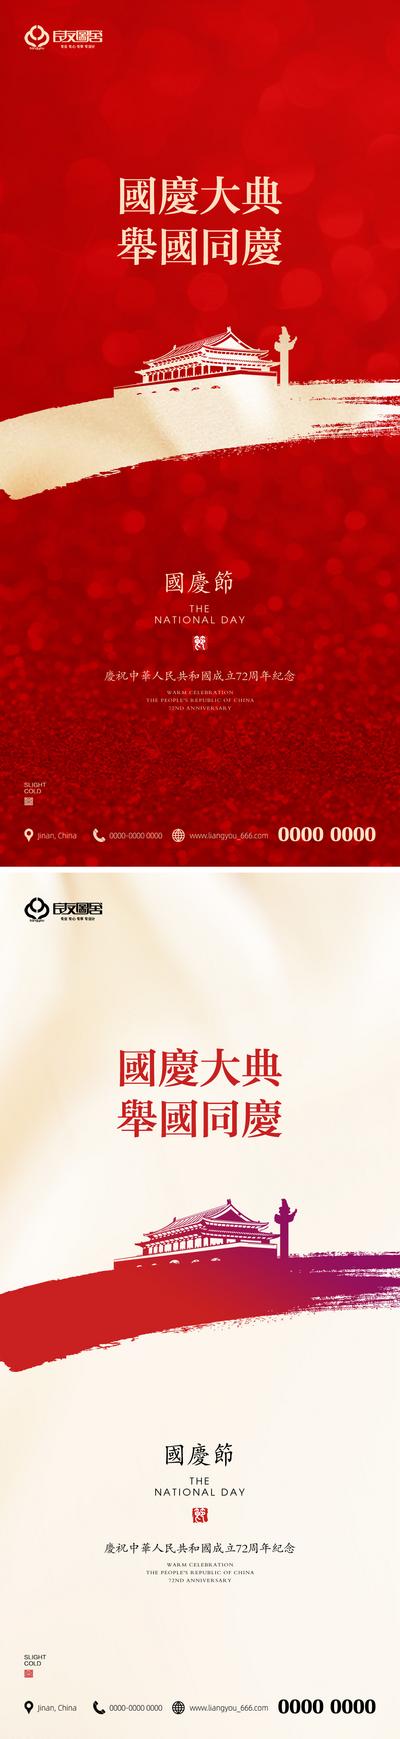 南门网 地产国庆节节日海报